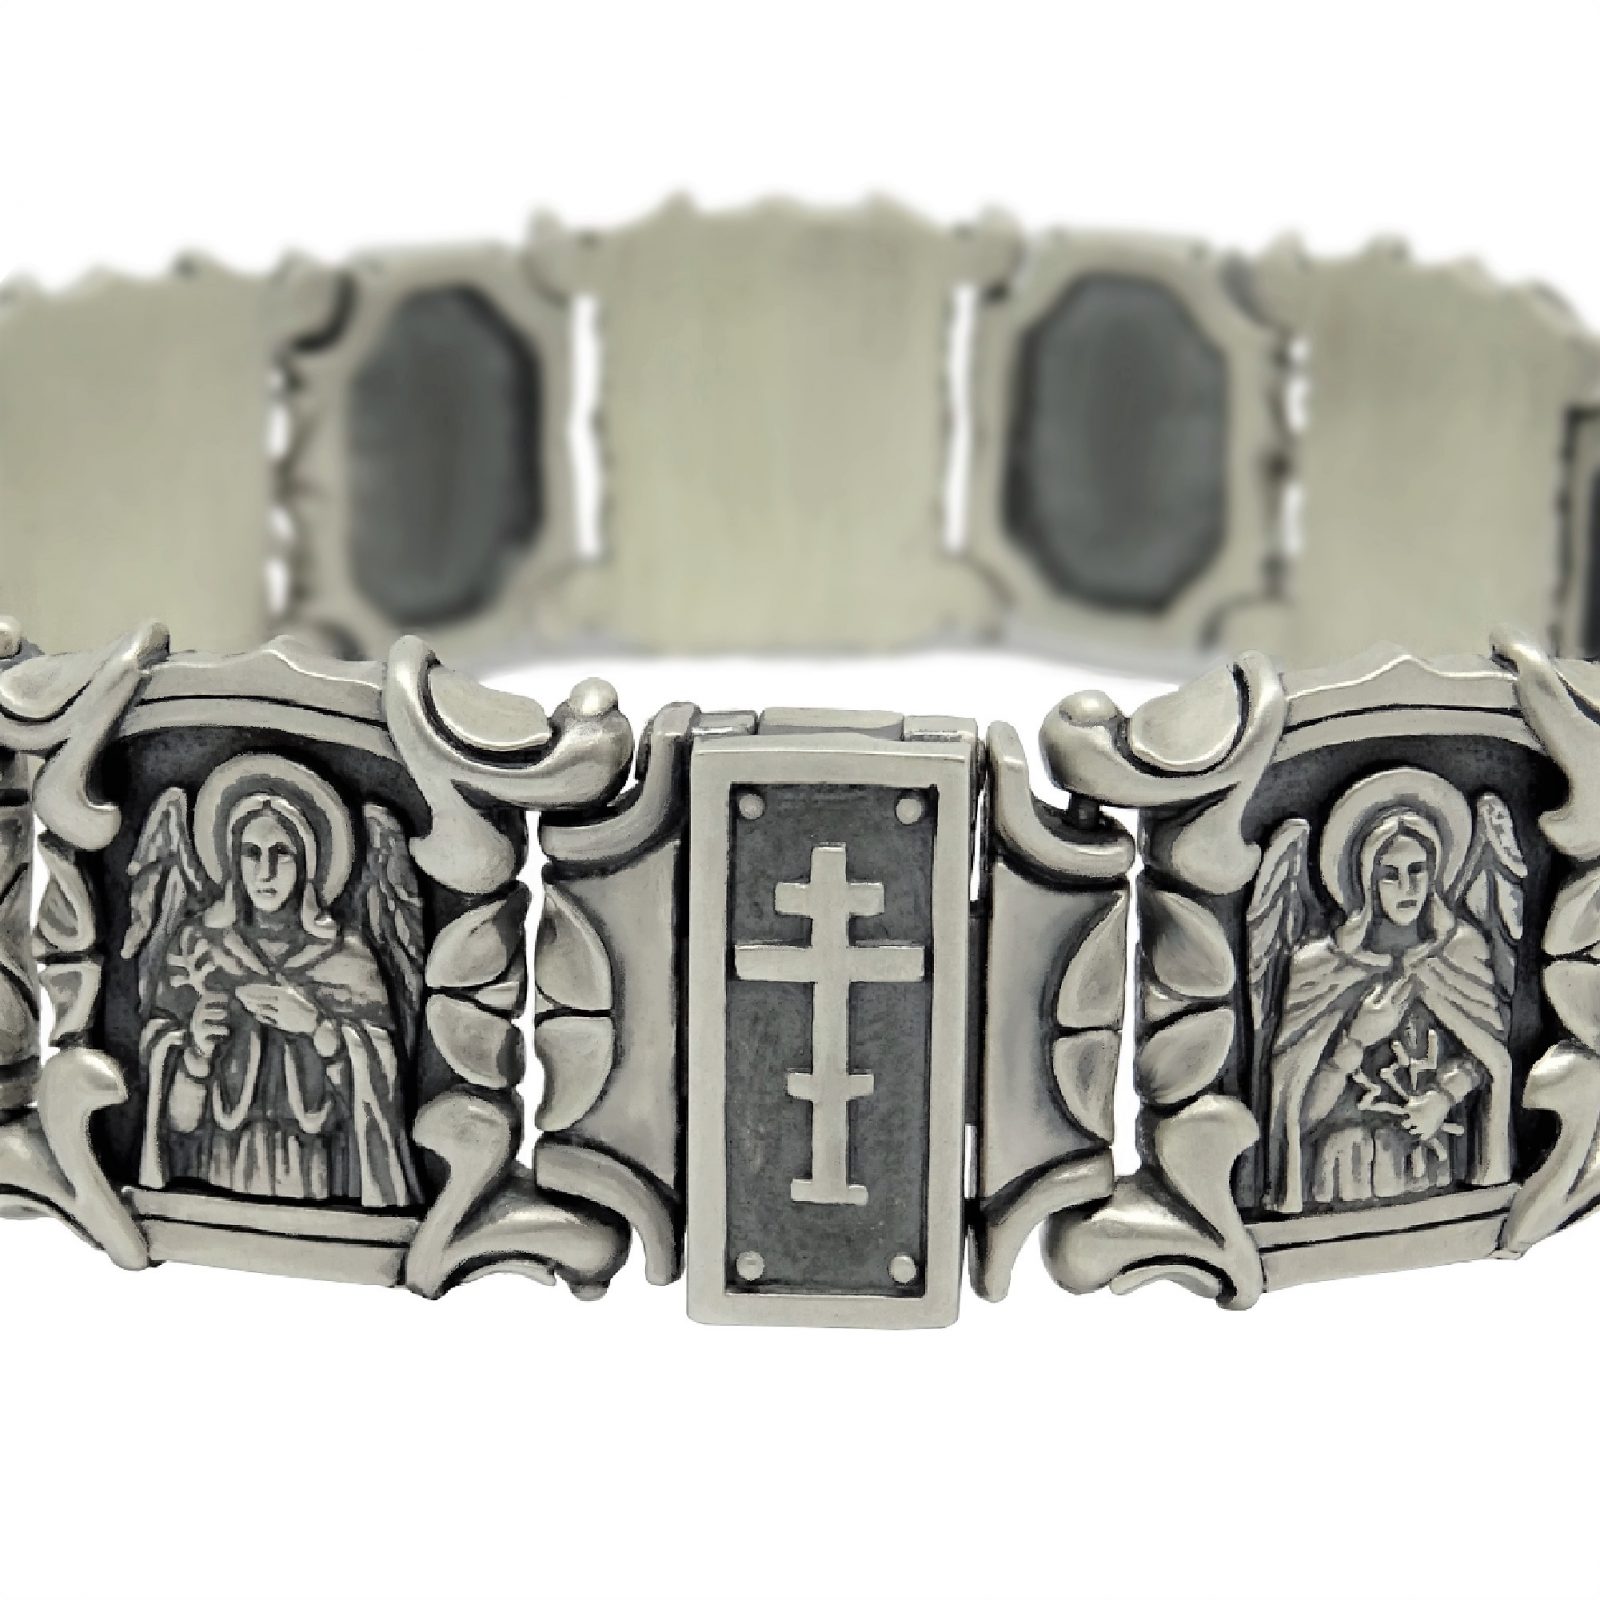 Religious Bracelets: Crosses, Fishers of Men & More | James Avery